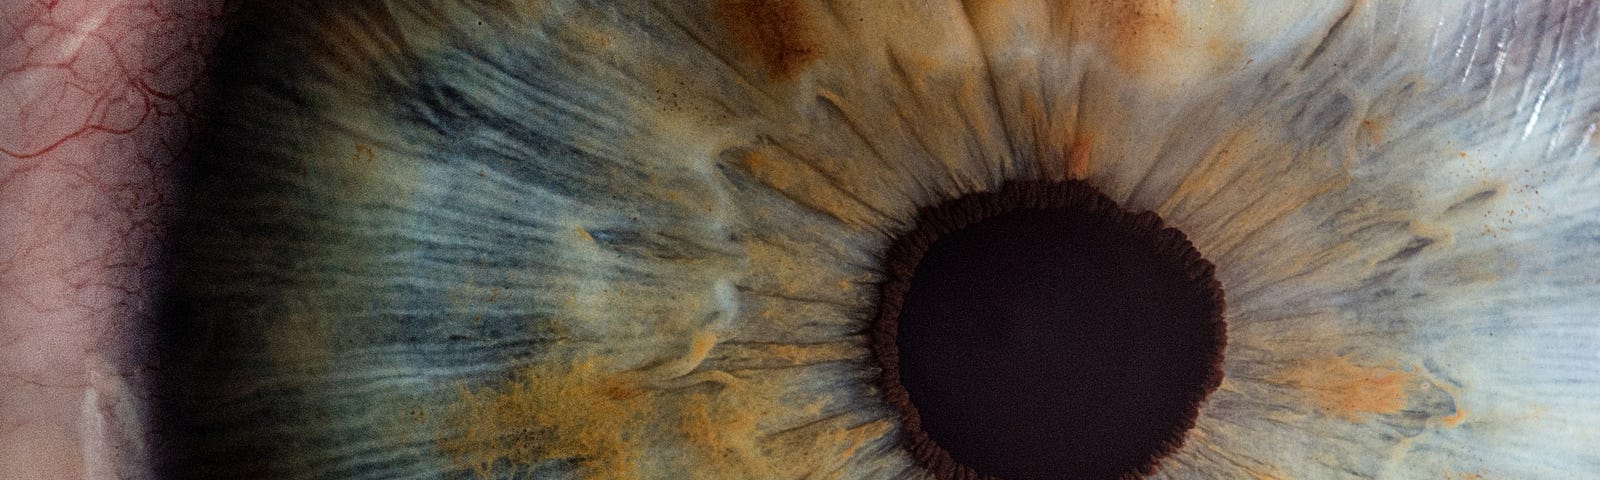 IMAGE: An extreme closeup of an iris